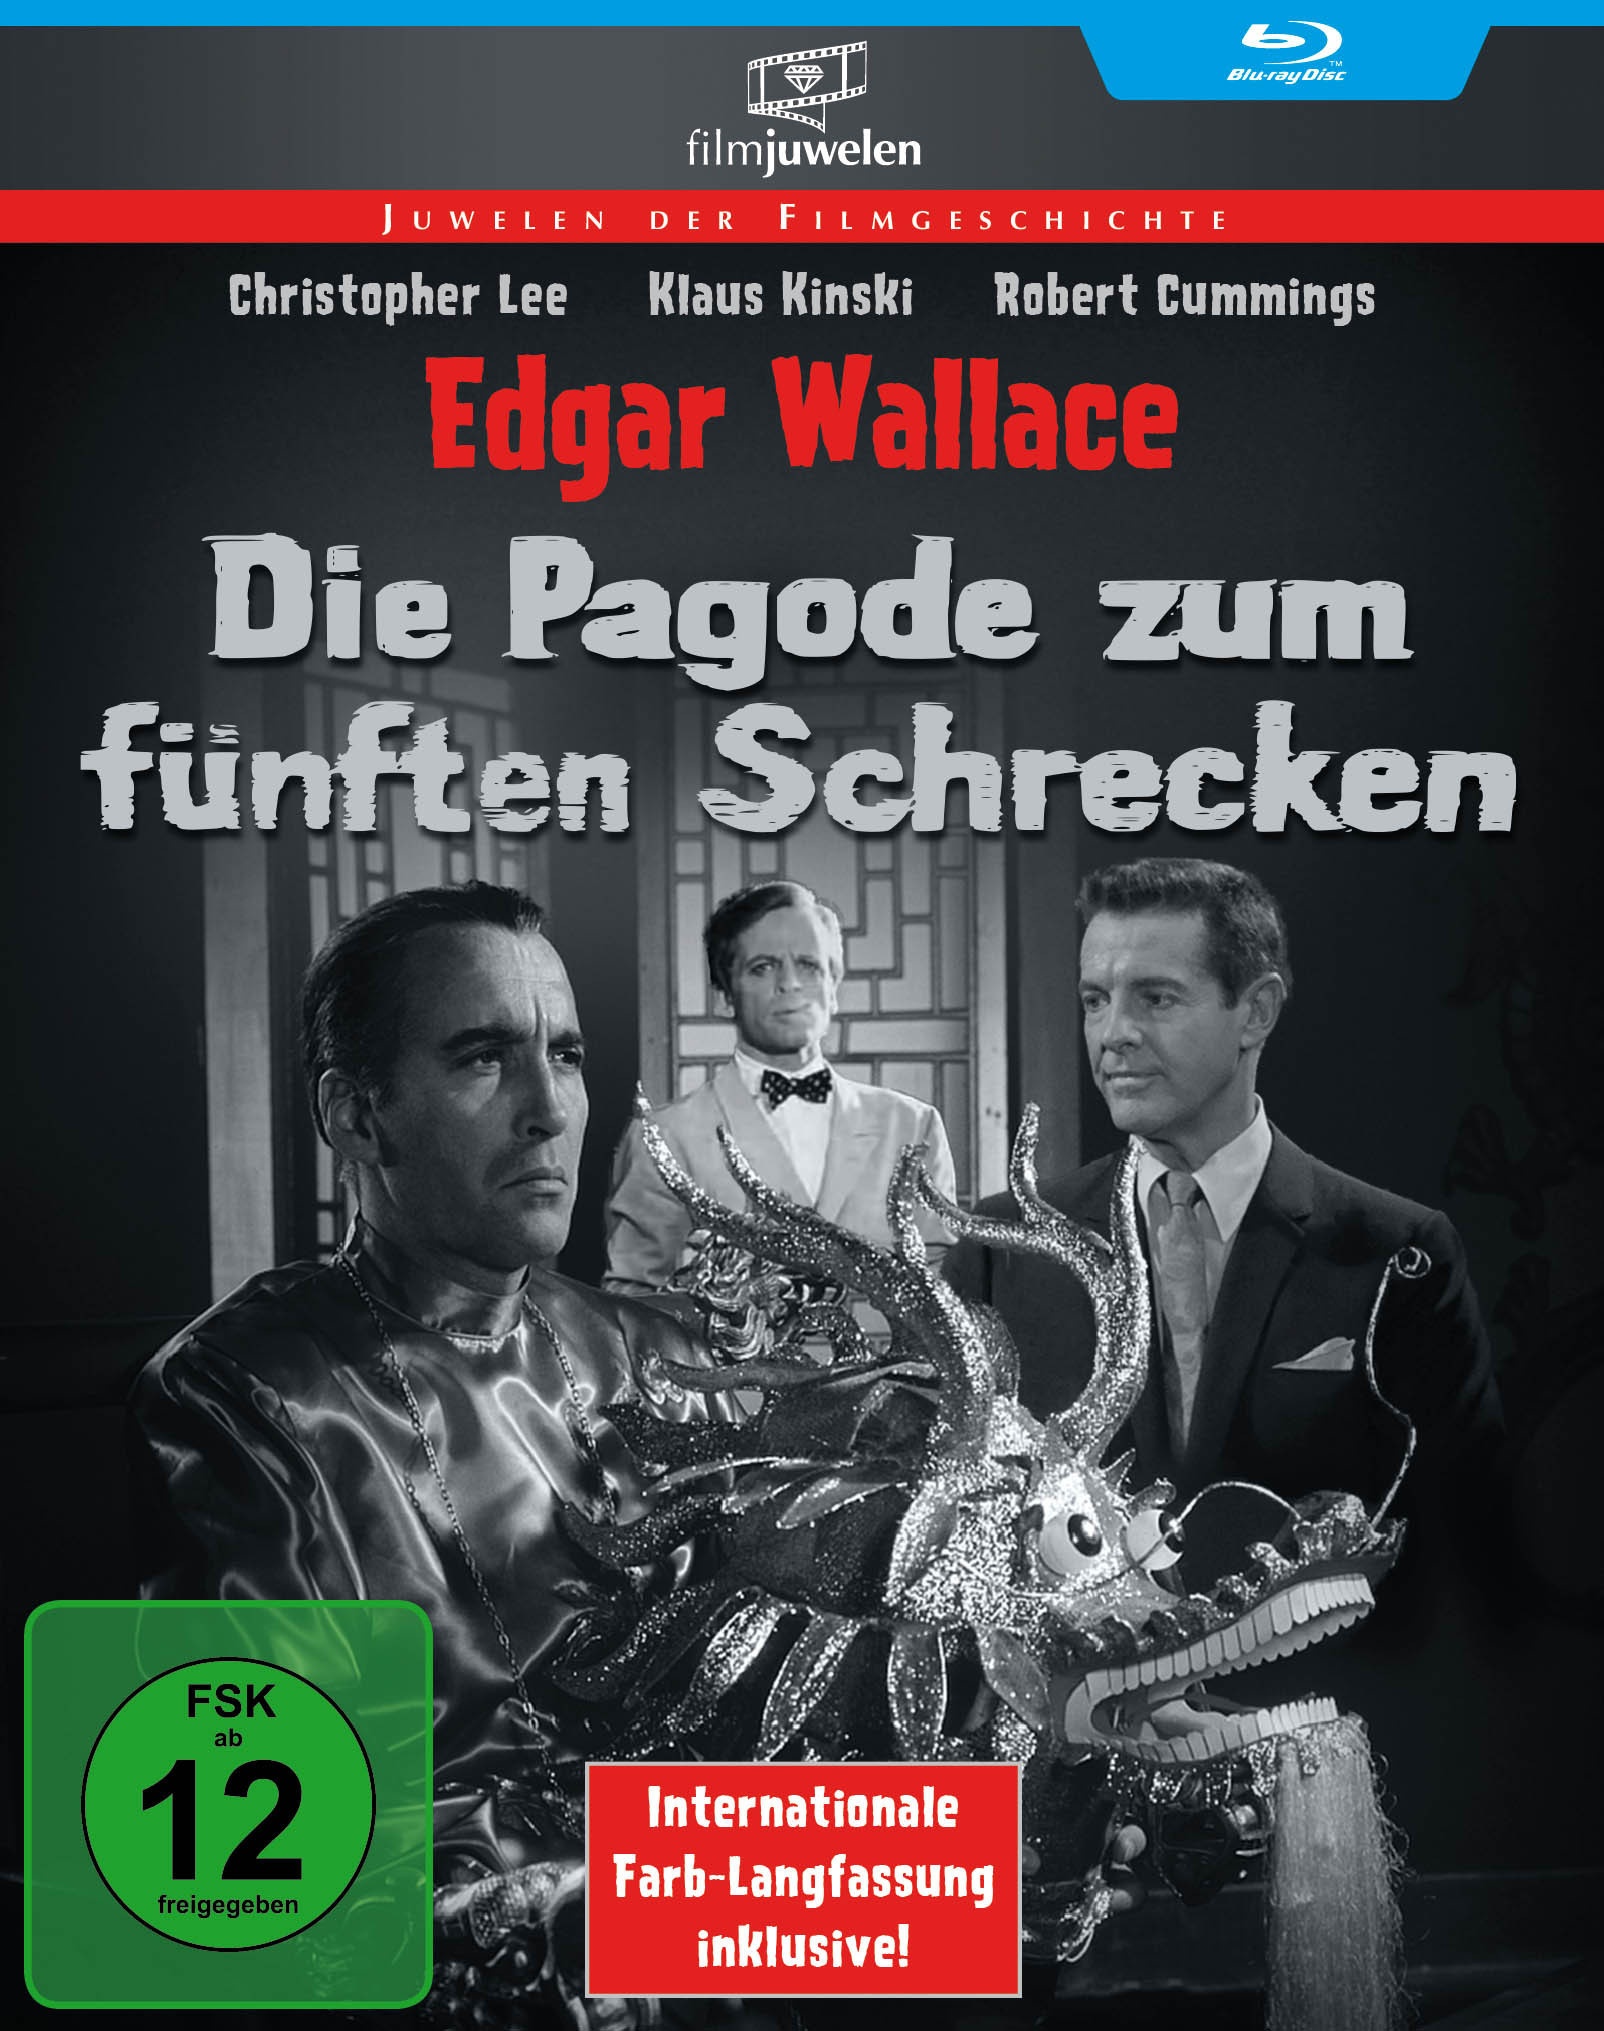 Edgar Wallace: Die Pagode Zum Fünften Schrecken (Blu-ray)